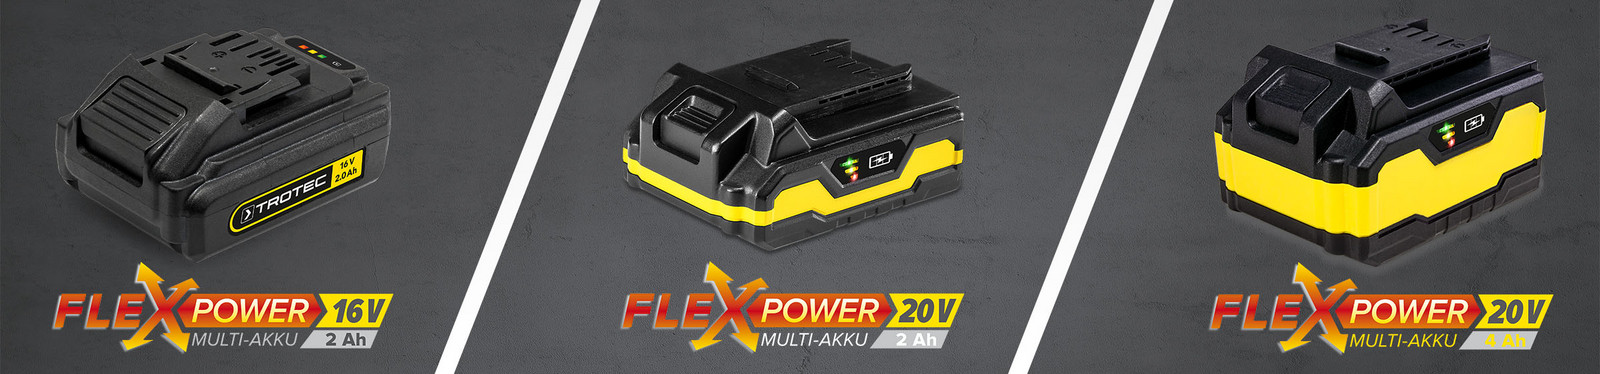 Flexpower – innowacyjny system Multiakku firmy Trotec